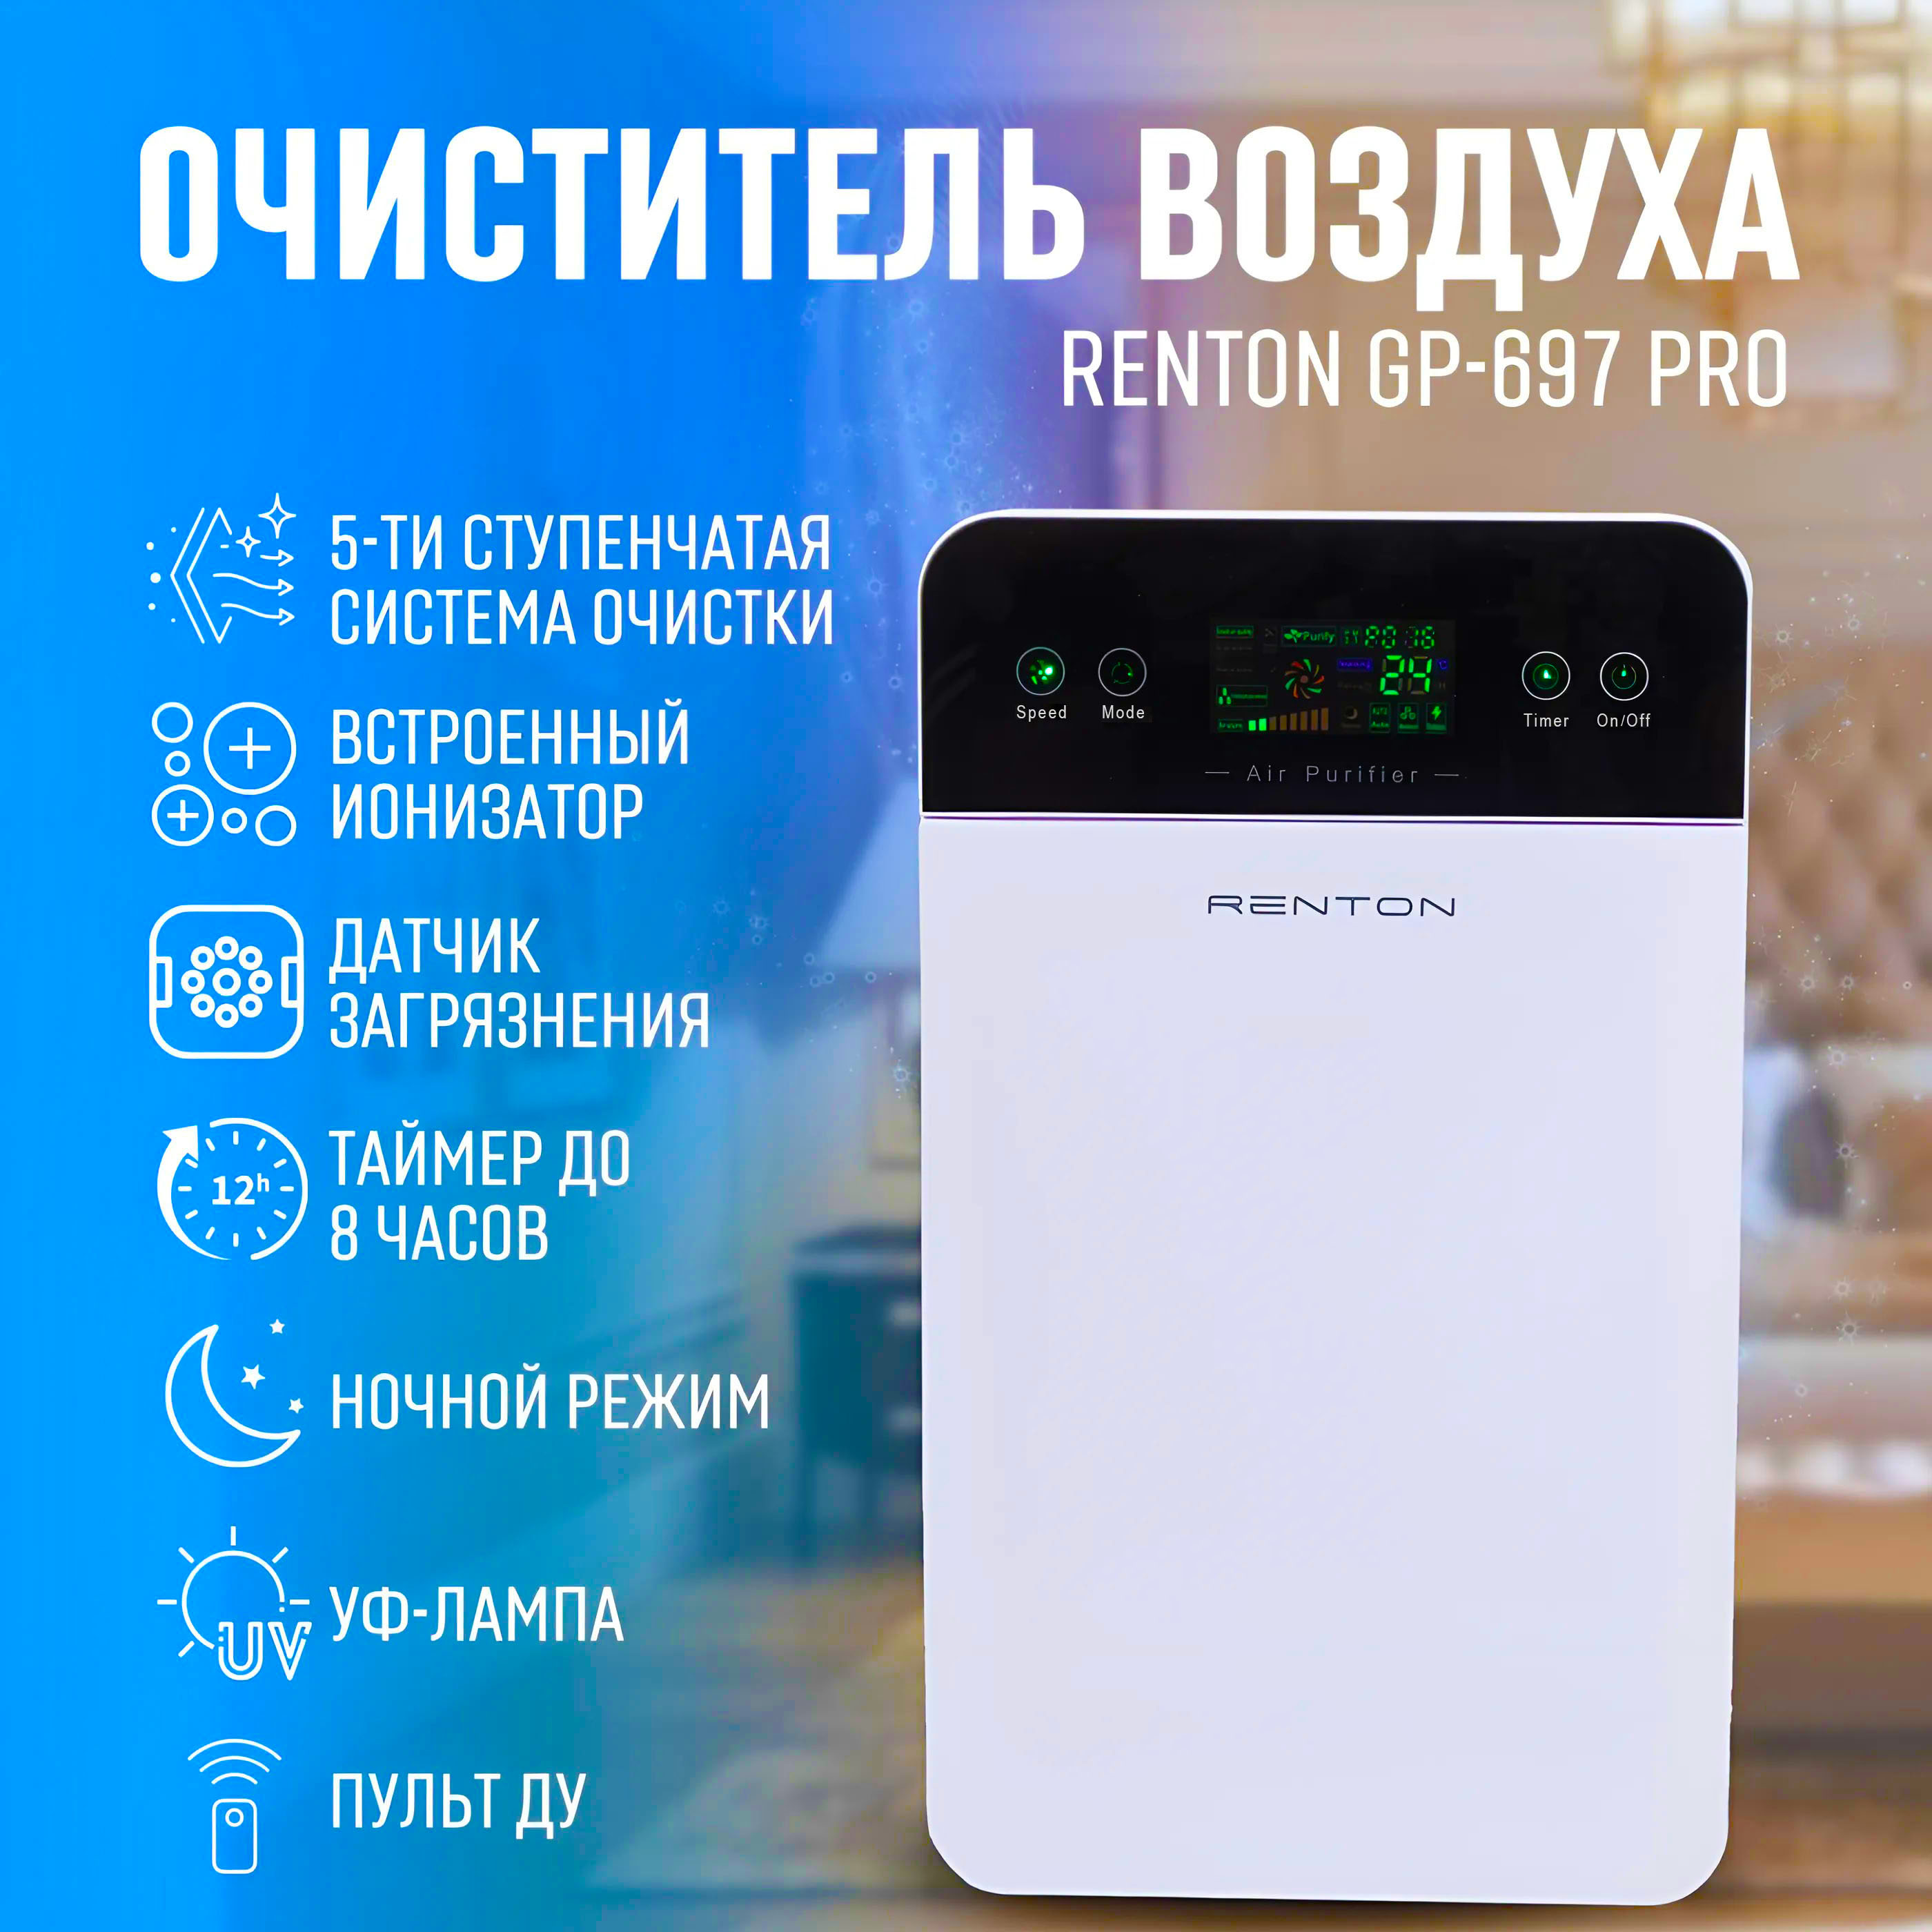 Очиститель воздуха для квартиры с ионизацией Renton GP-697 Pro очиститель воздуха для квартиры с ионизацией renton gp 697 pro